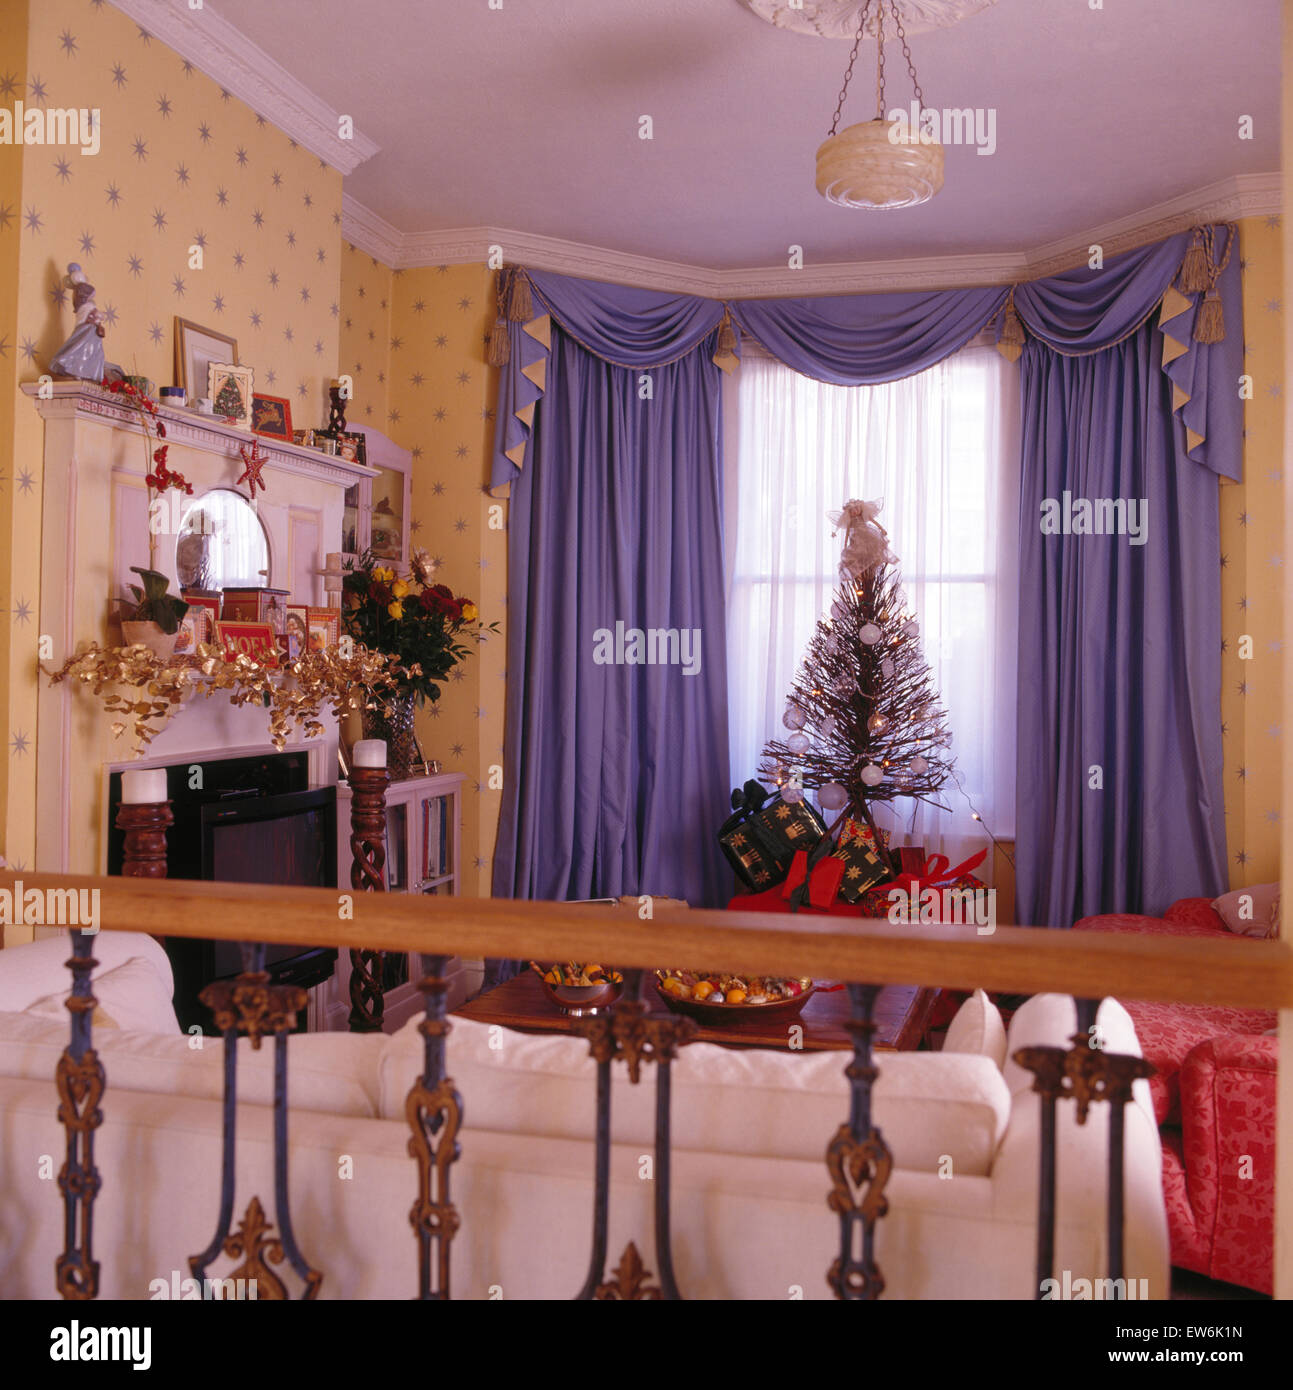 Viola e swagged tailed tende in novanta soggiorno decorato per il Natale Foto Stock